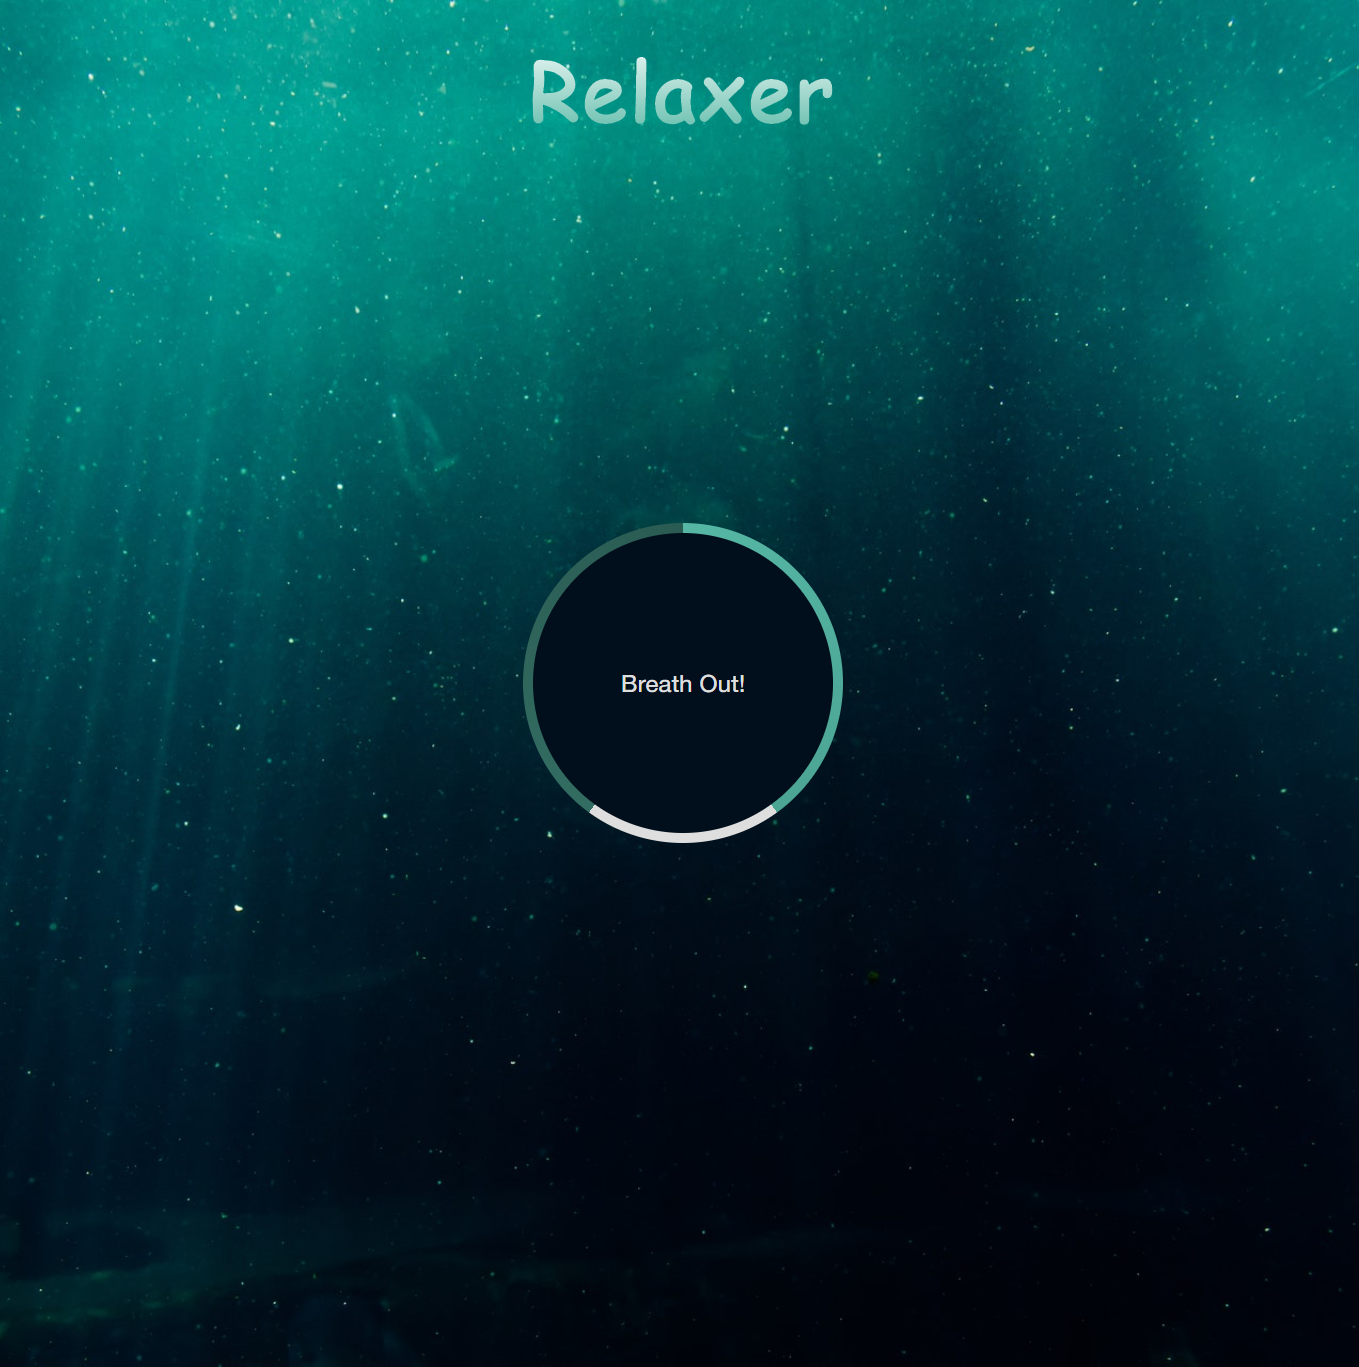 Relaxer-App